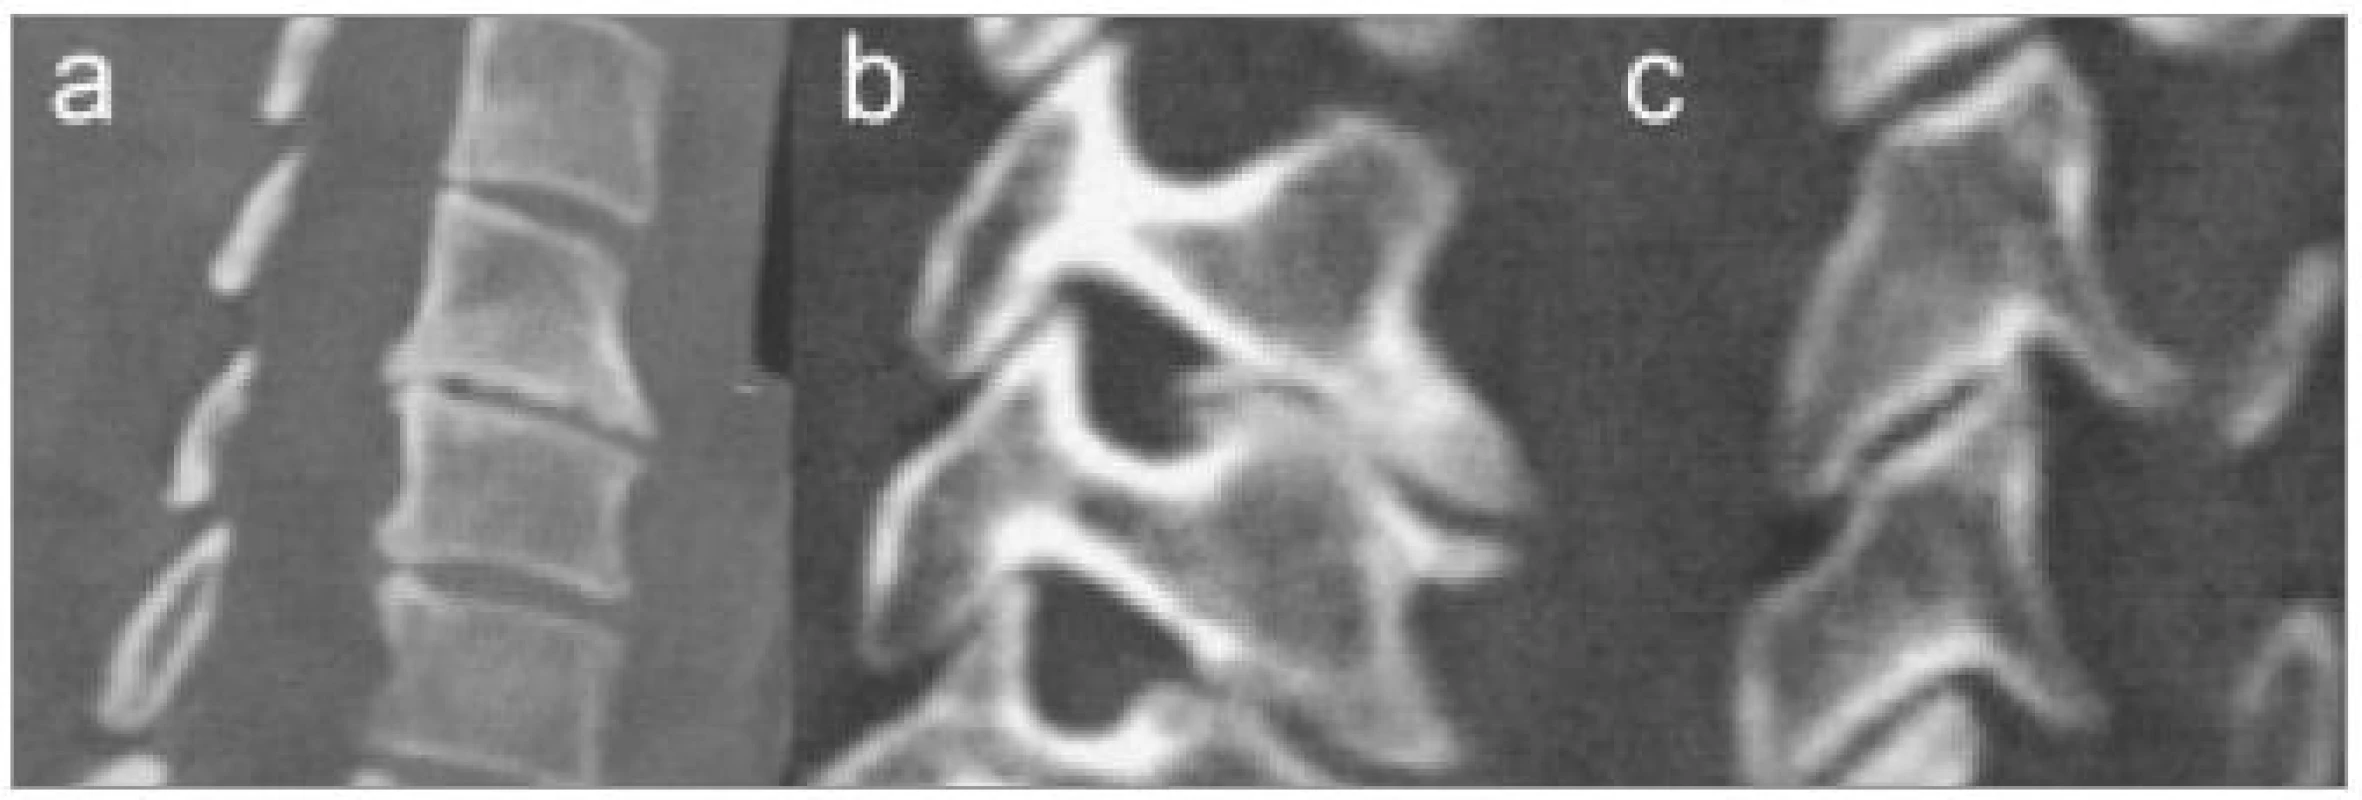 CT rekonstrukce v sagitální a parasagitálních rovinách zobrazující různé typy degenerativních změn.
a) Osteofyty v prostoru C5/6 i C6/7.
b) Unkovertebrální neoartróza zužující foramen intervertebrale C5/6.
c) Počínající artróza meziobratlového kloubu.